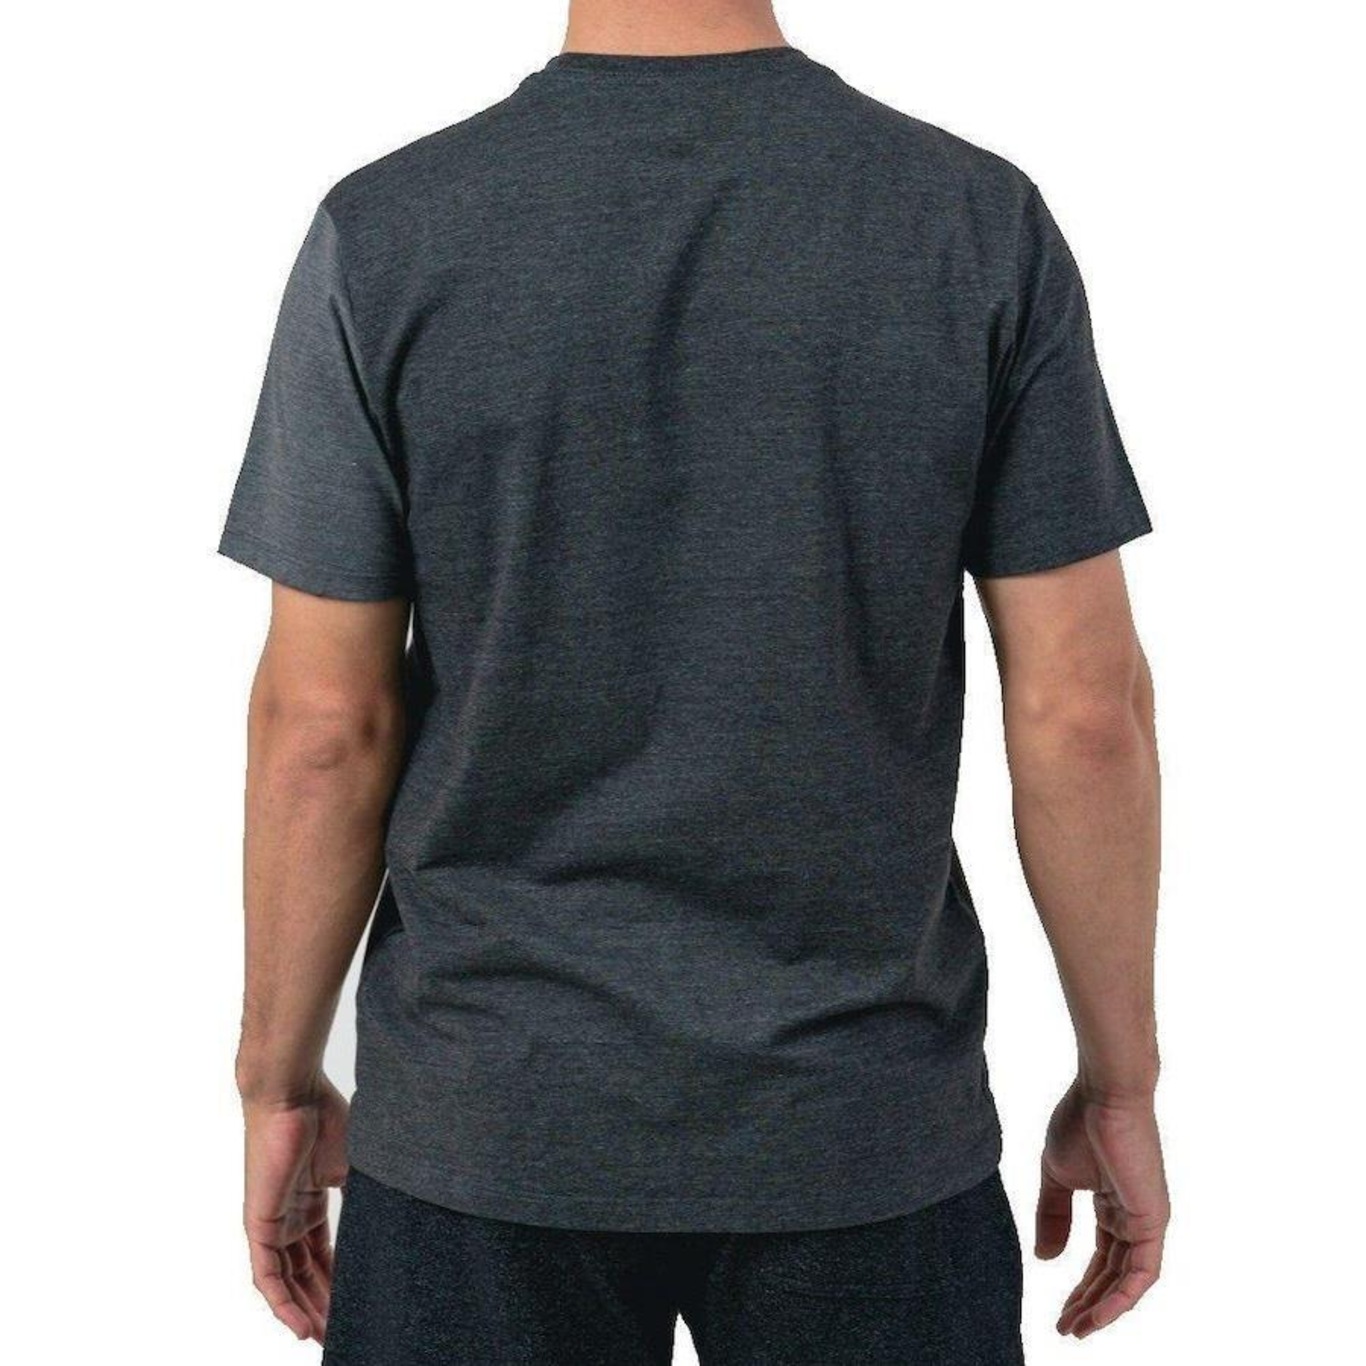 Camiseta Oakley O-Bark Preto/Cinza - Radical Place - Loja Virtual de  Produtos Esportivos